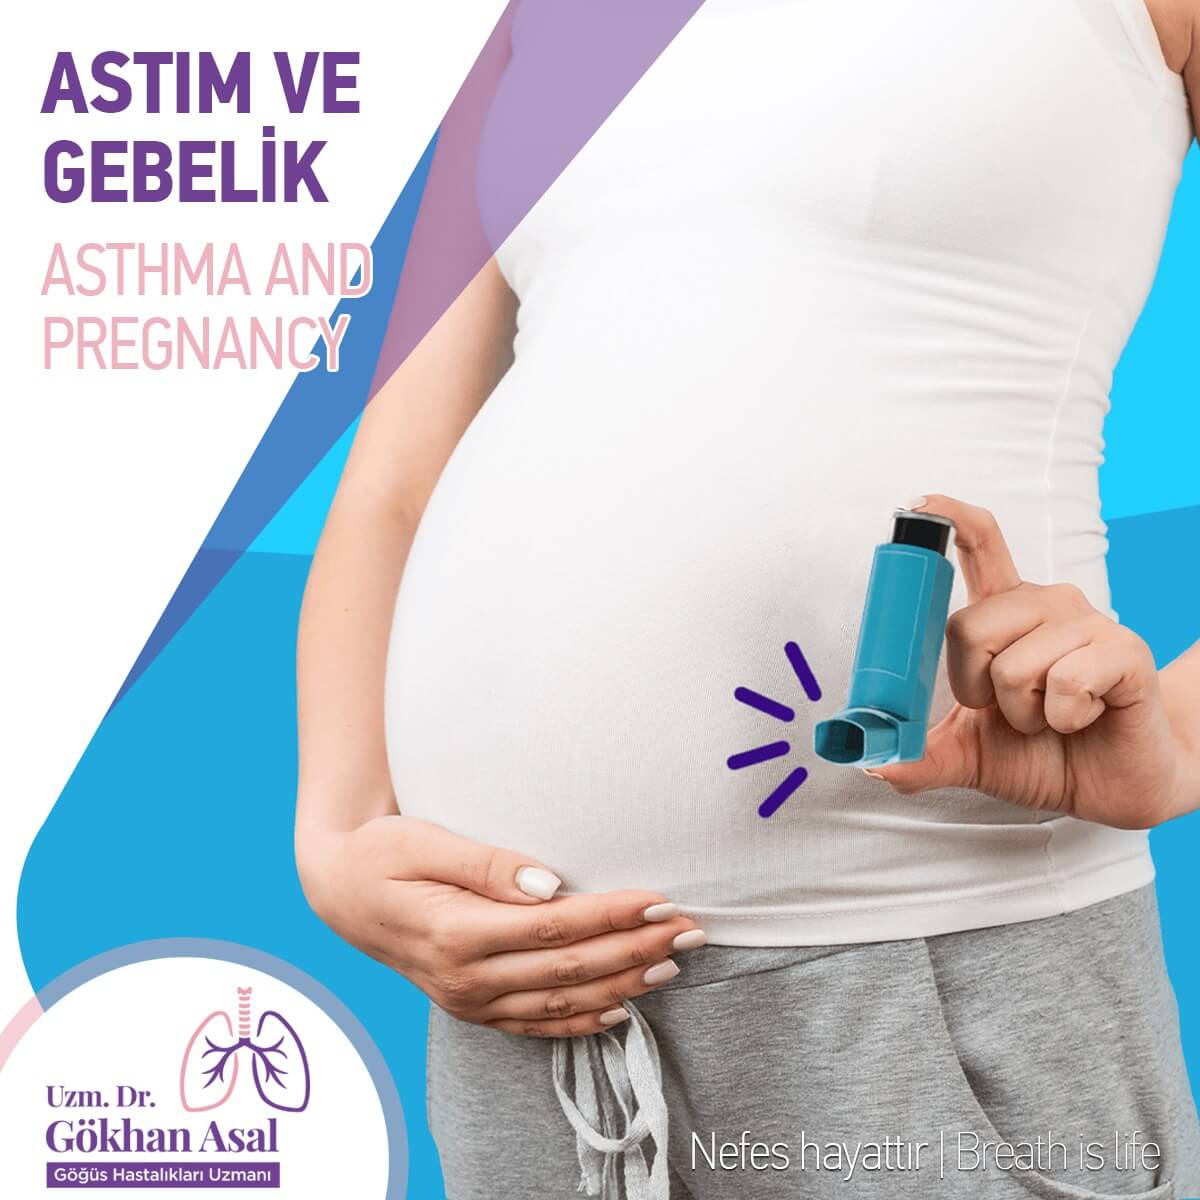 Antalya-Astım-ve-gebelik, alerjik astım ve rinit belirtilerii tedavisi